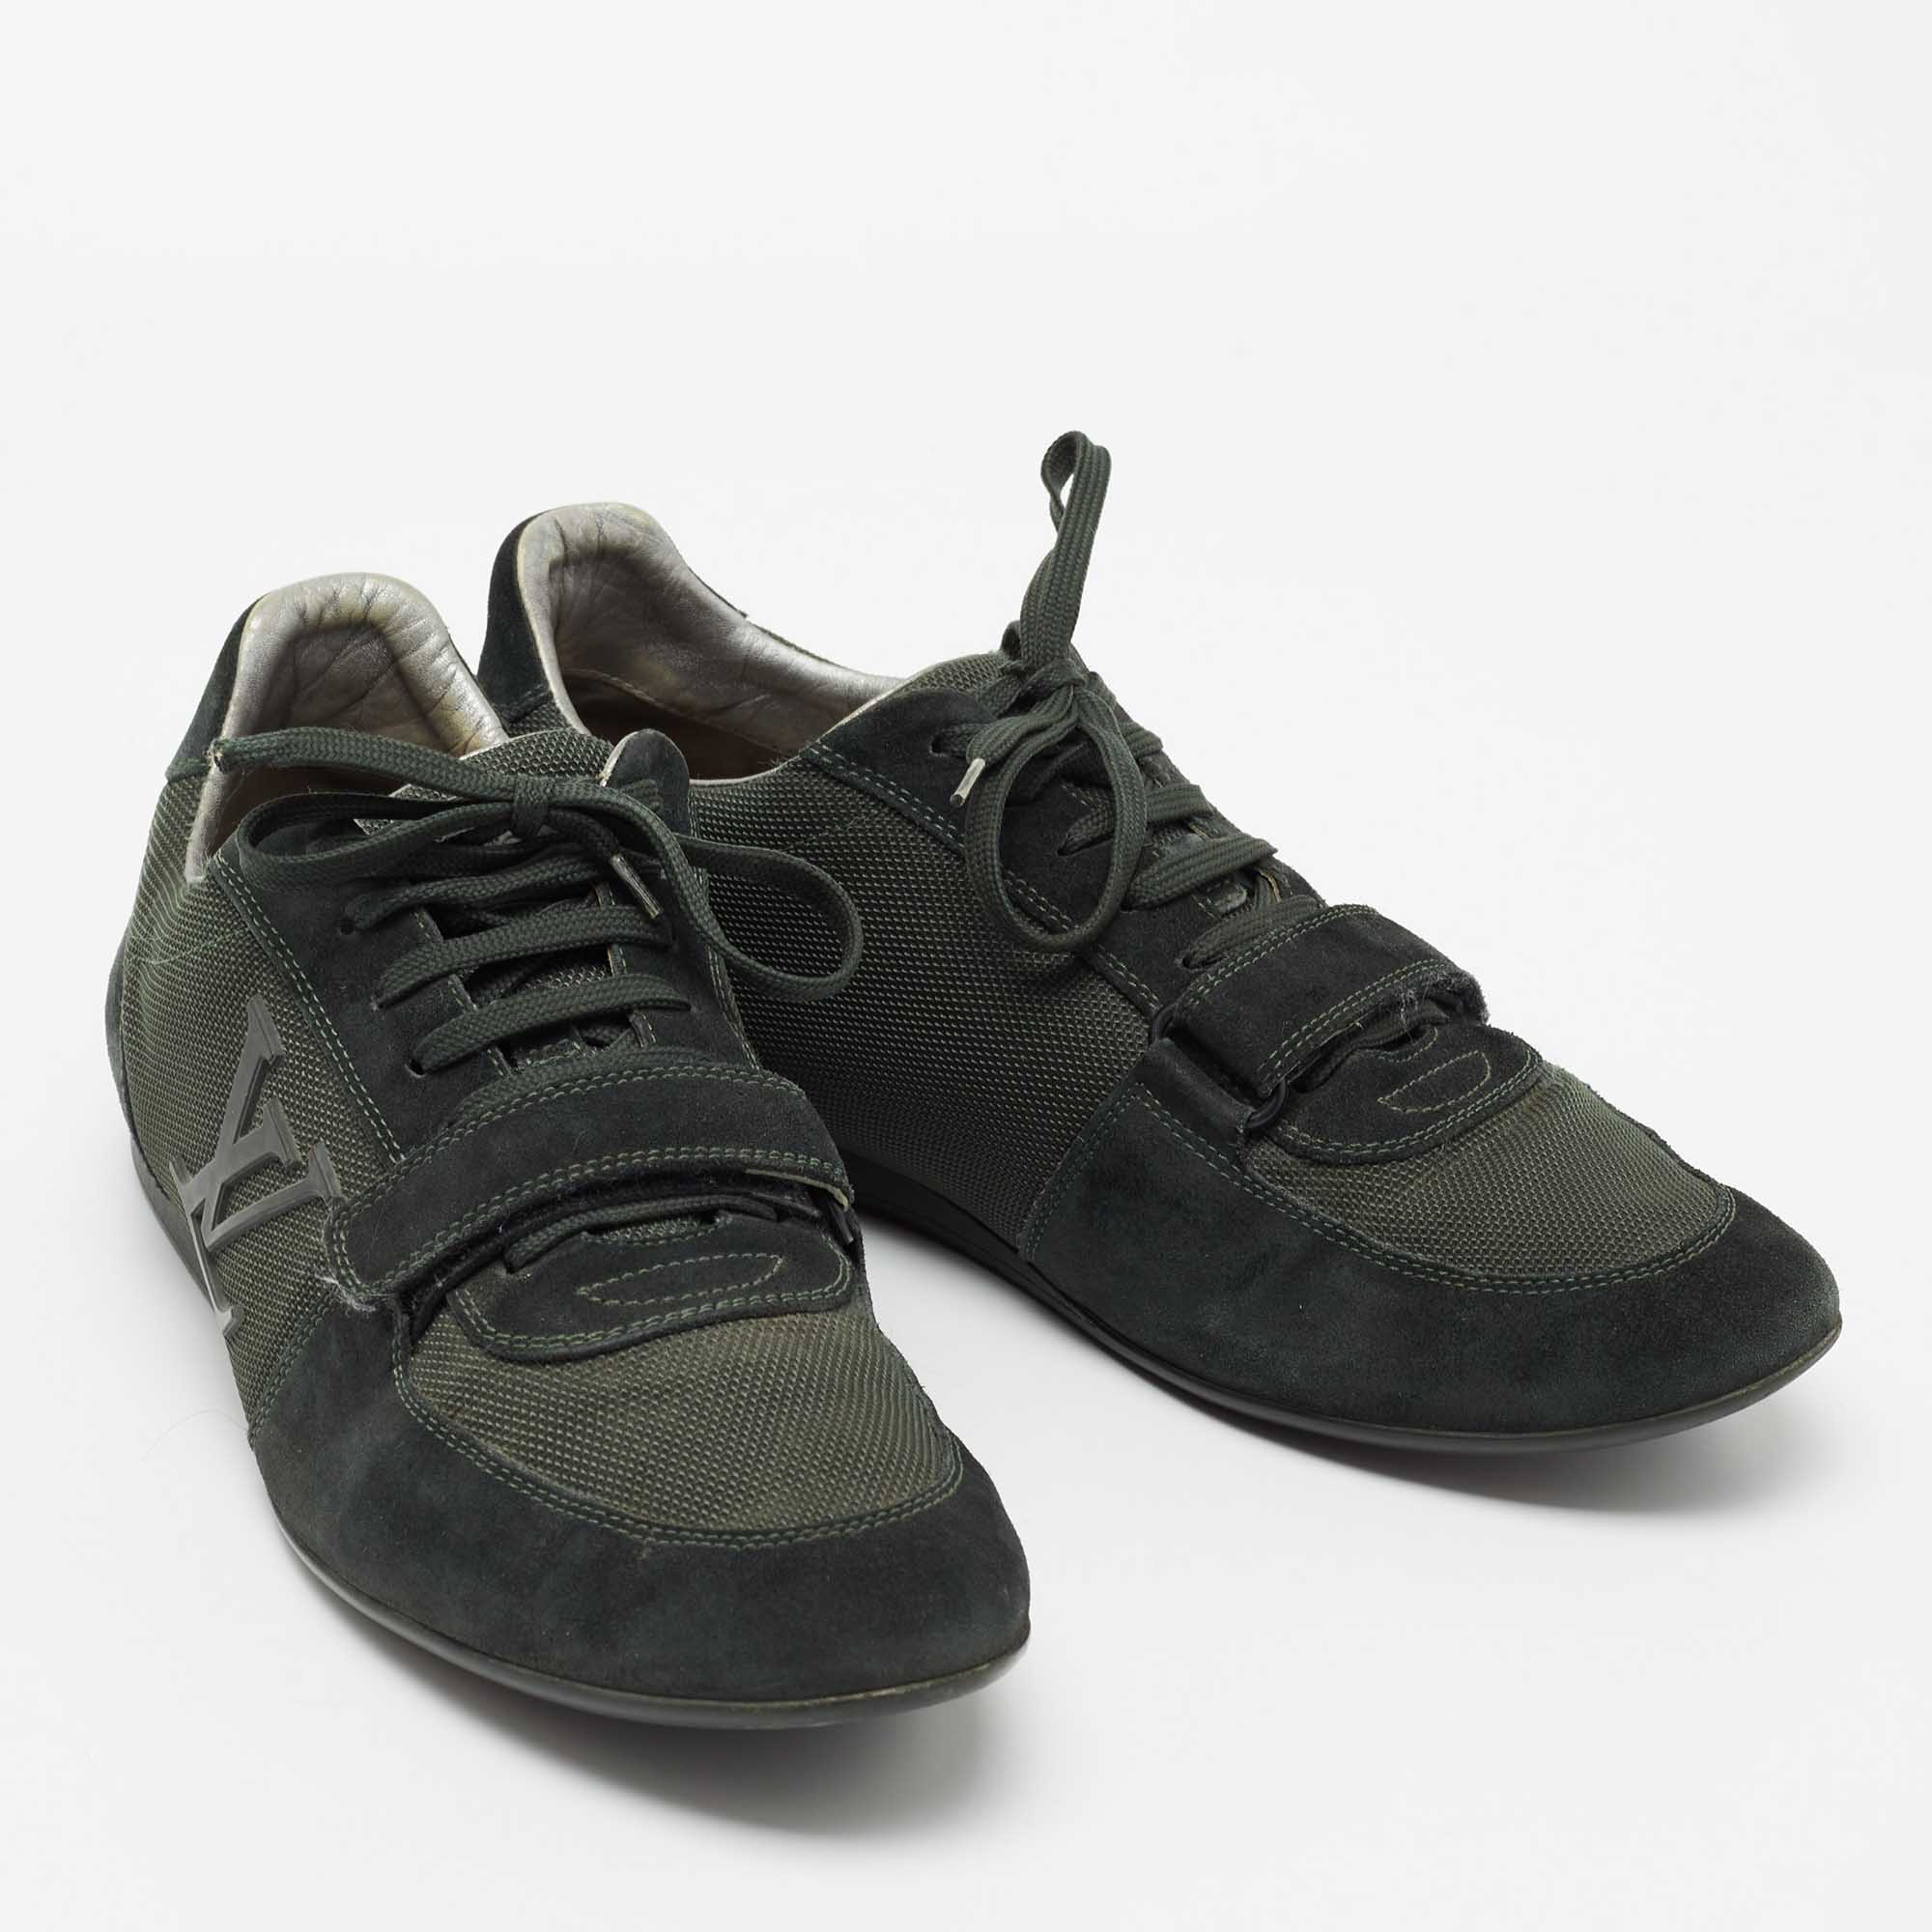 LOUIS VUITTON LOUIS VUITTON sneakers shoes lace-up #5 Suede Black